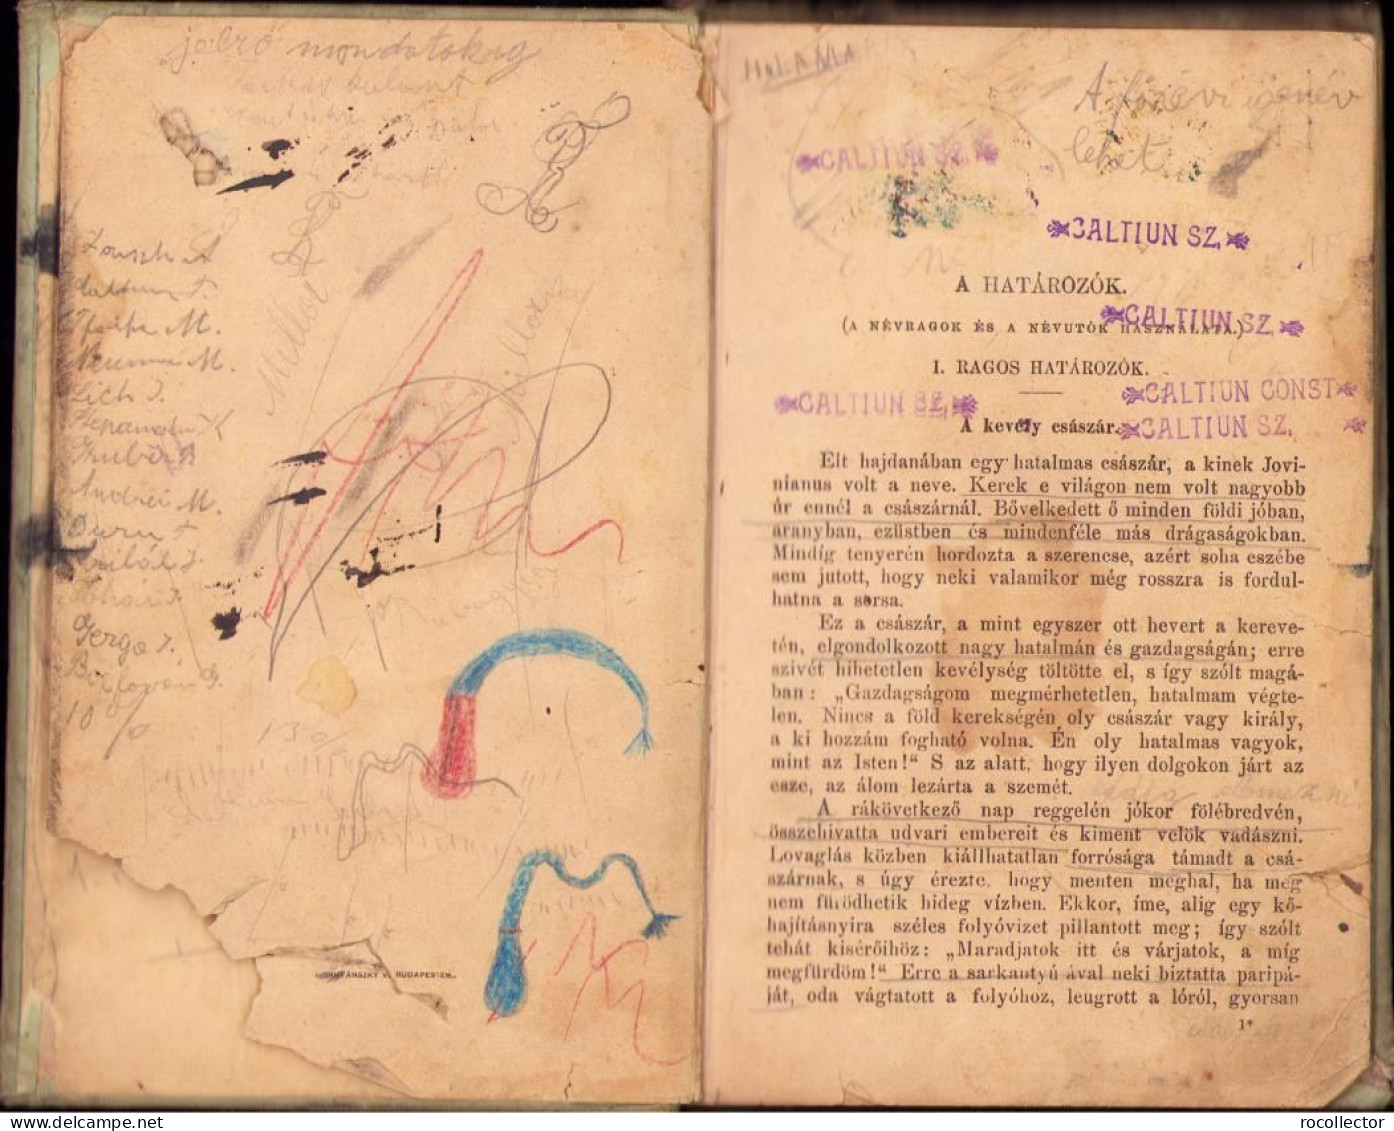 Iskolai Magyar Nyelvtan Mondattani Alapon Irta Szinnyei Jozsef, Második Rész, 1894, Budapest C1455 - Livres Anciens